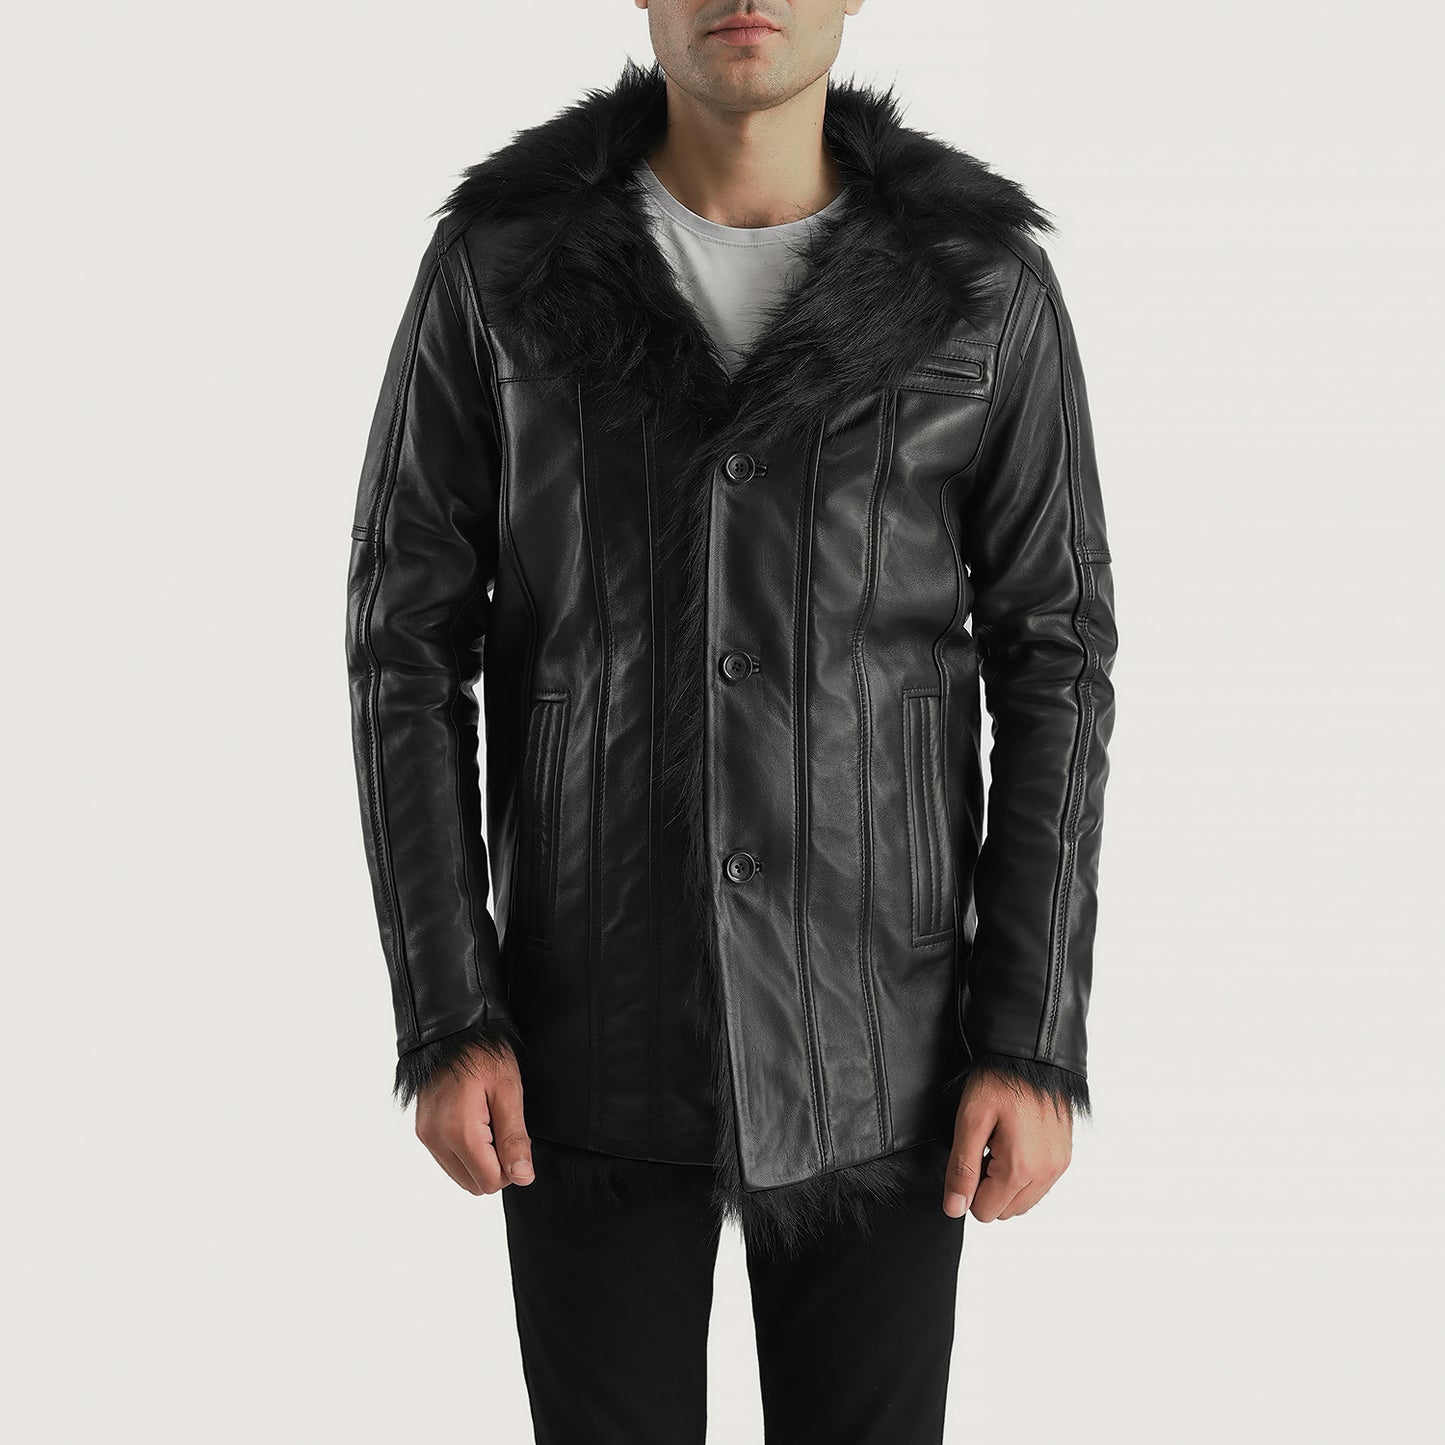 Buy BestFurcliff Black Leather Coat